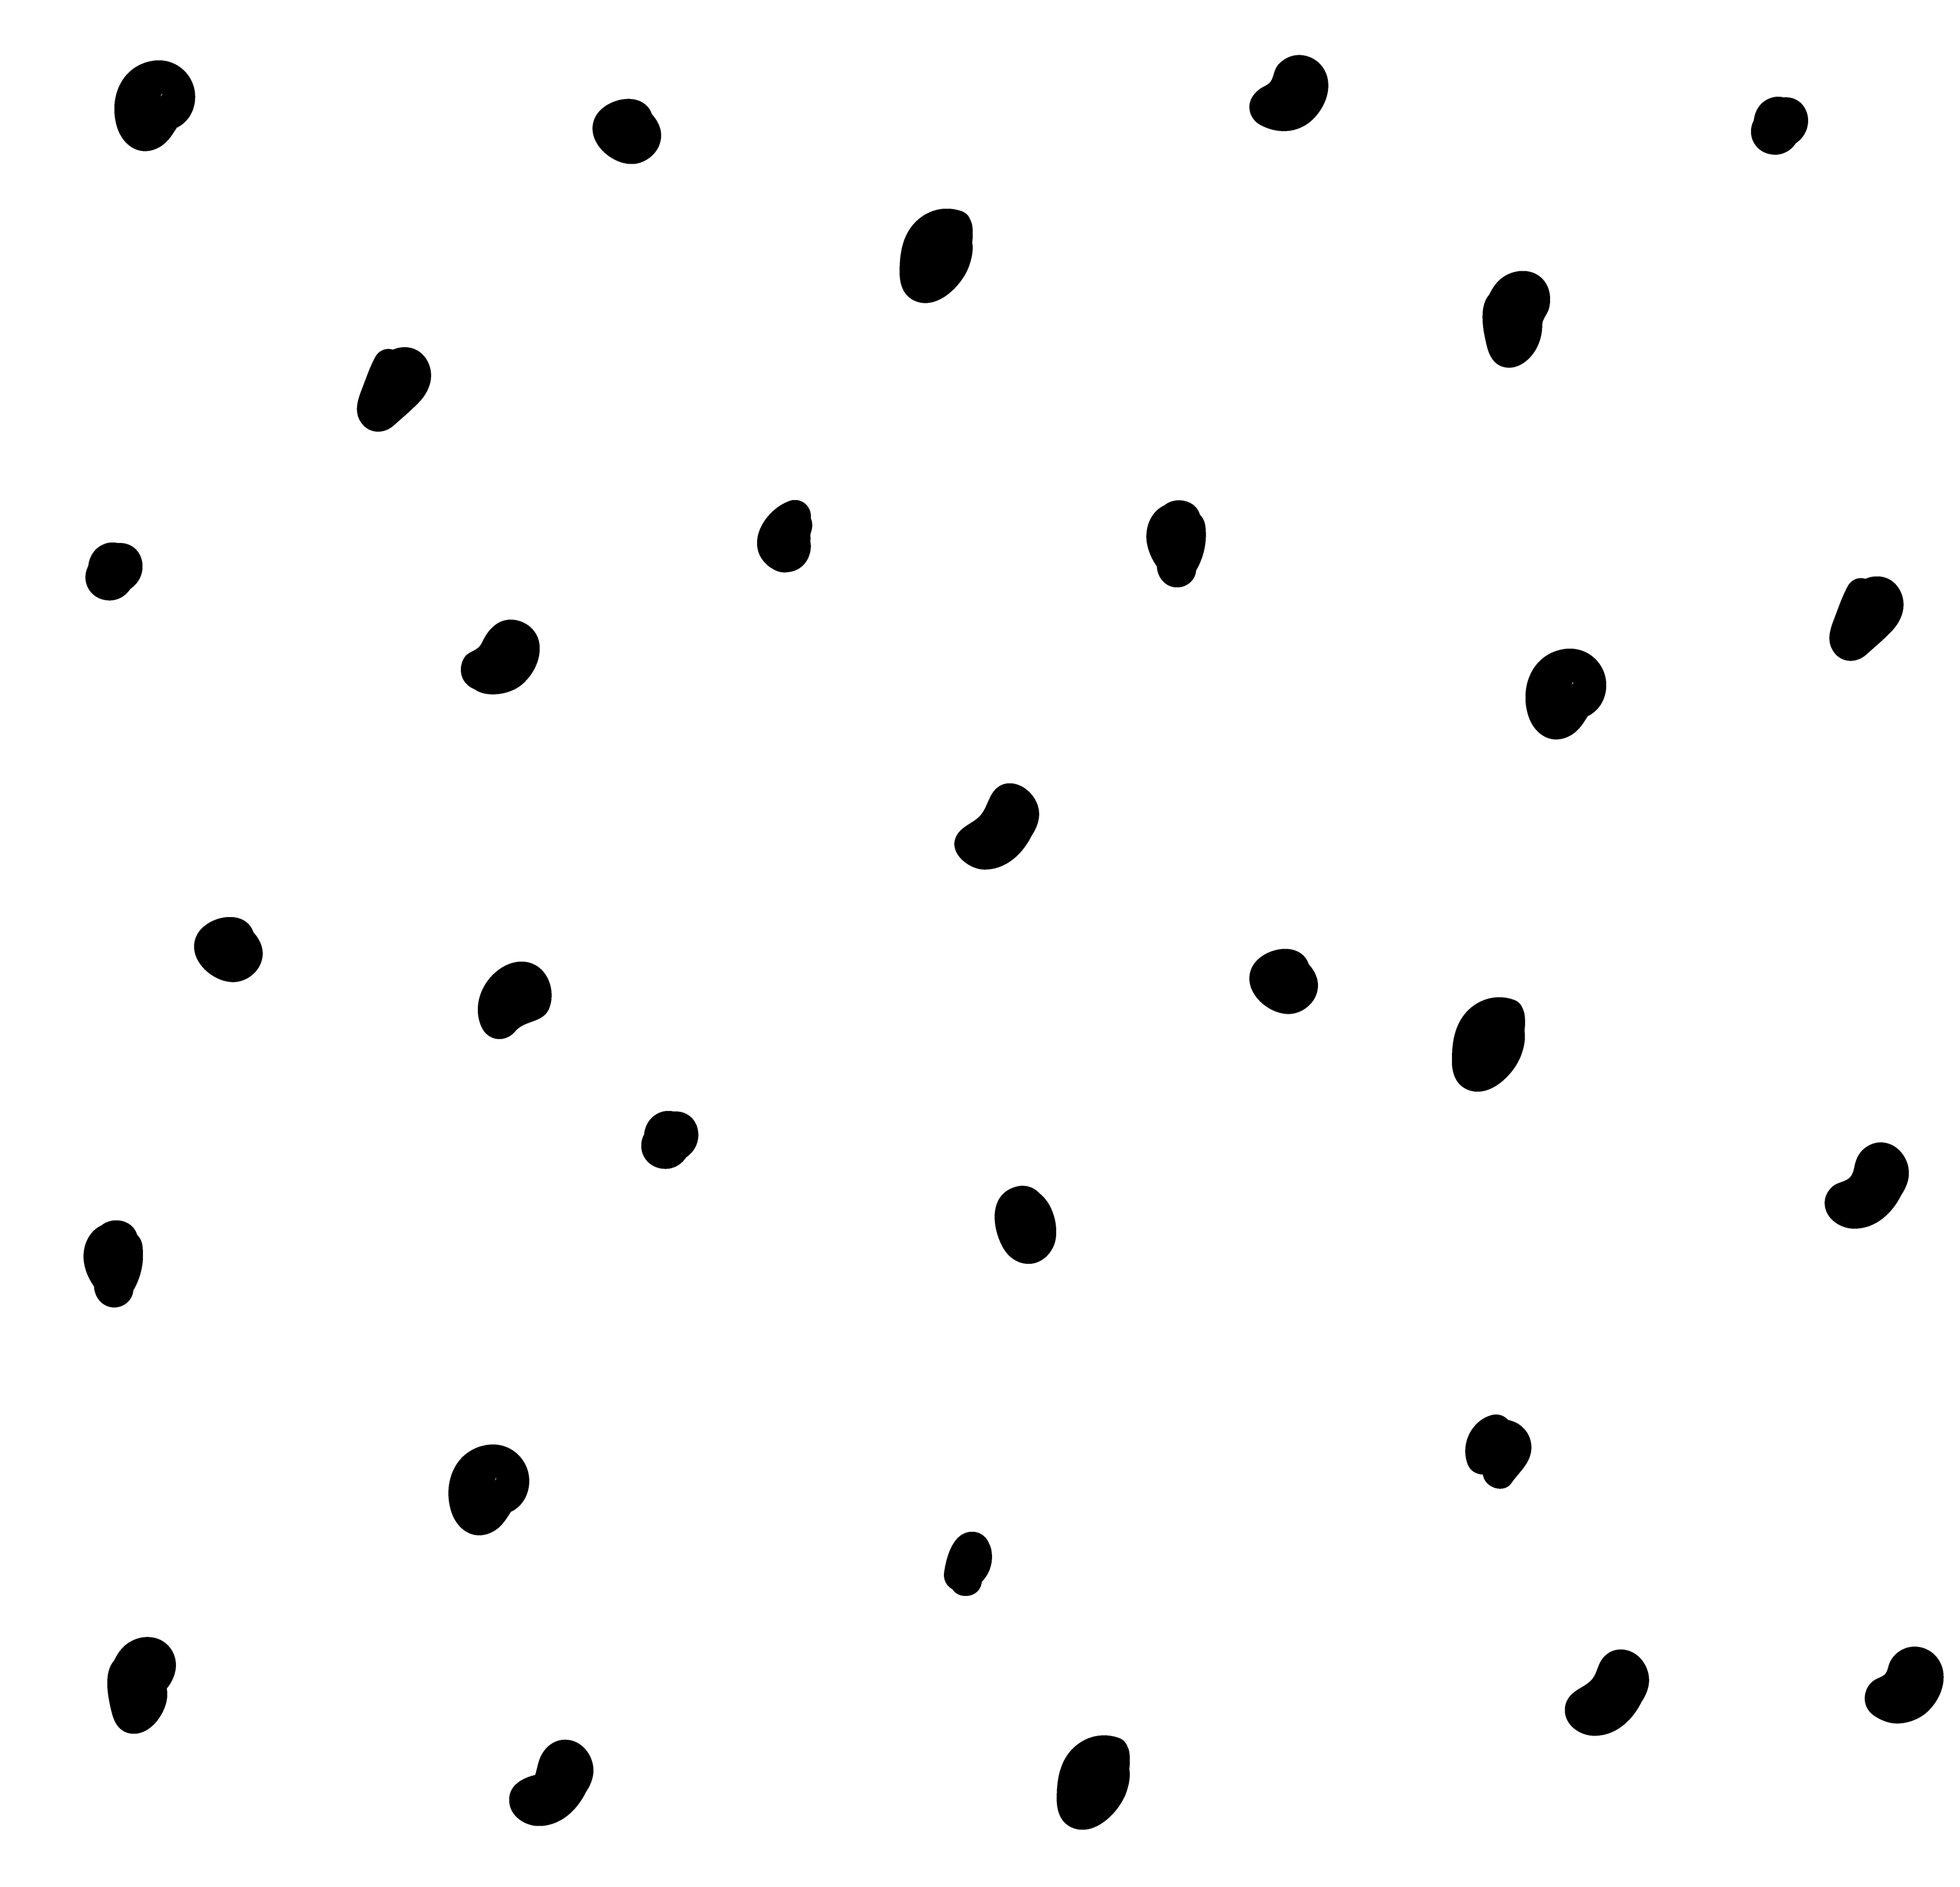 patroon met zwarte stippen op witte achtergrond 3042000 Vectorkunst bij Vecteezy